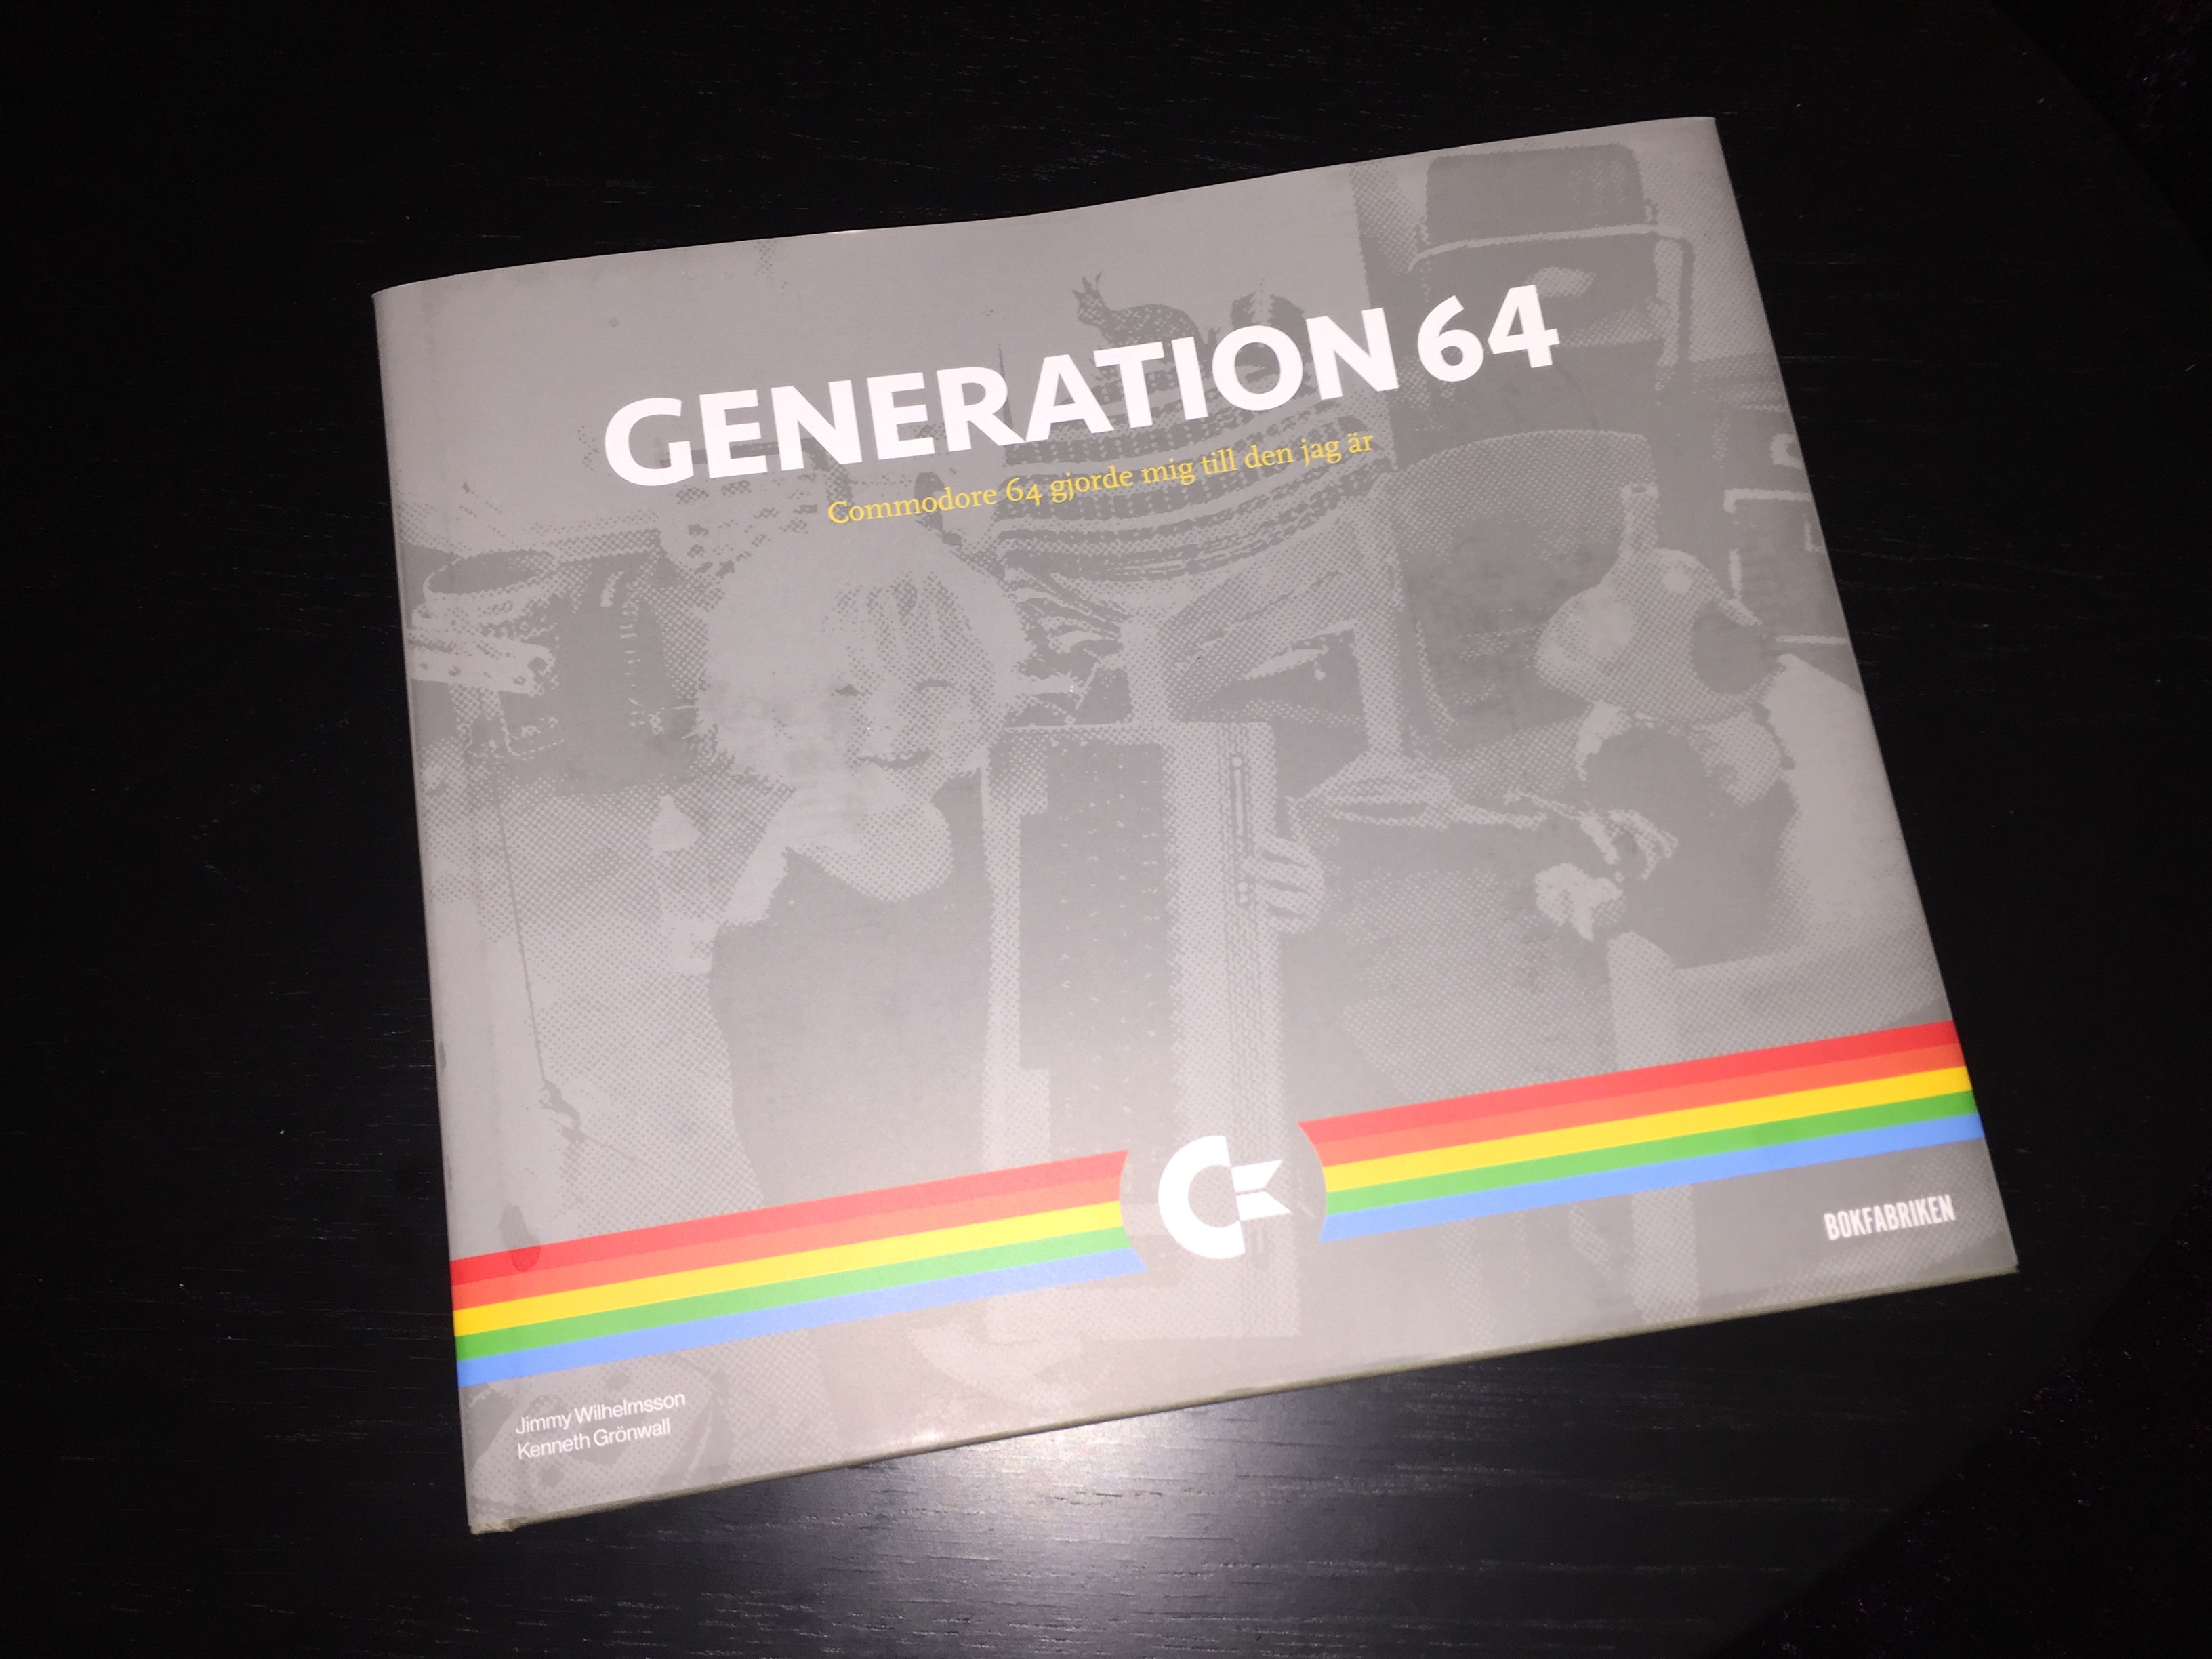 Generation 64 - Commodore 64 gjorde mig till den jag är.